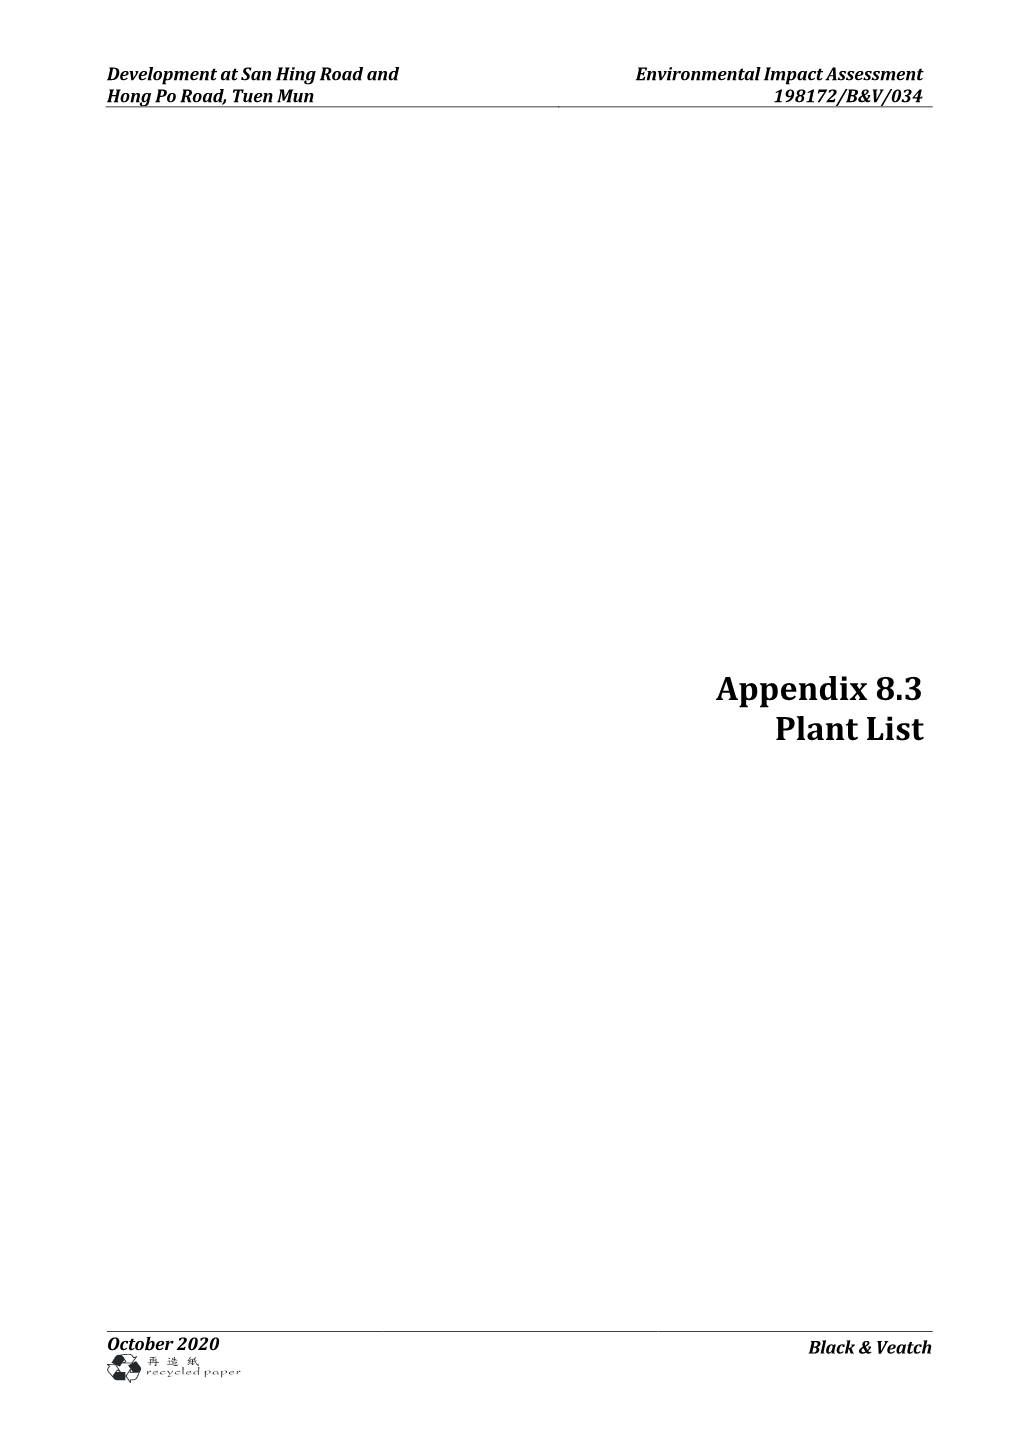 Appendix 8.3 Plant List